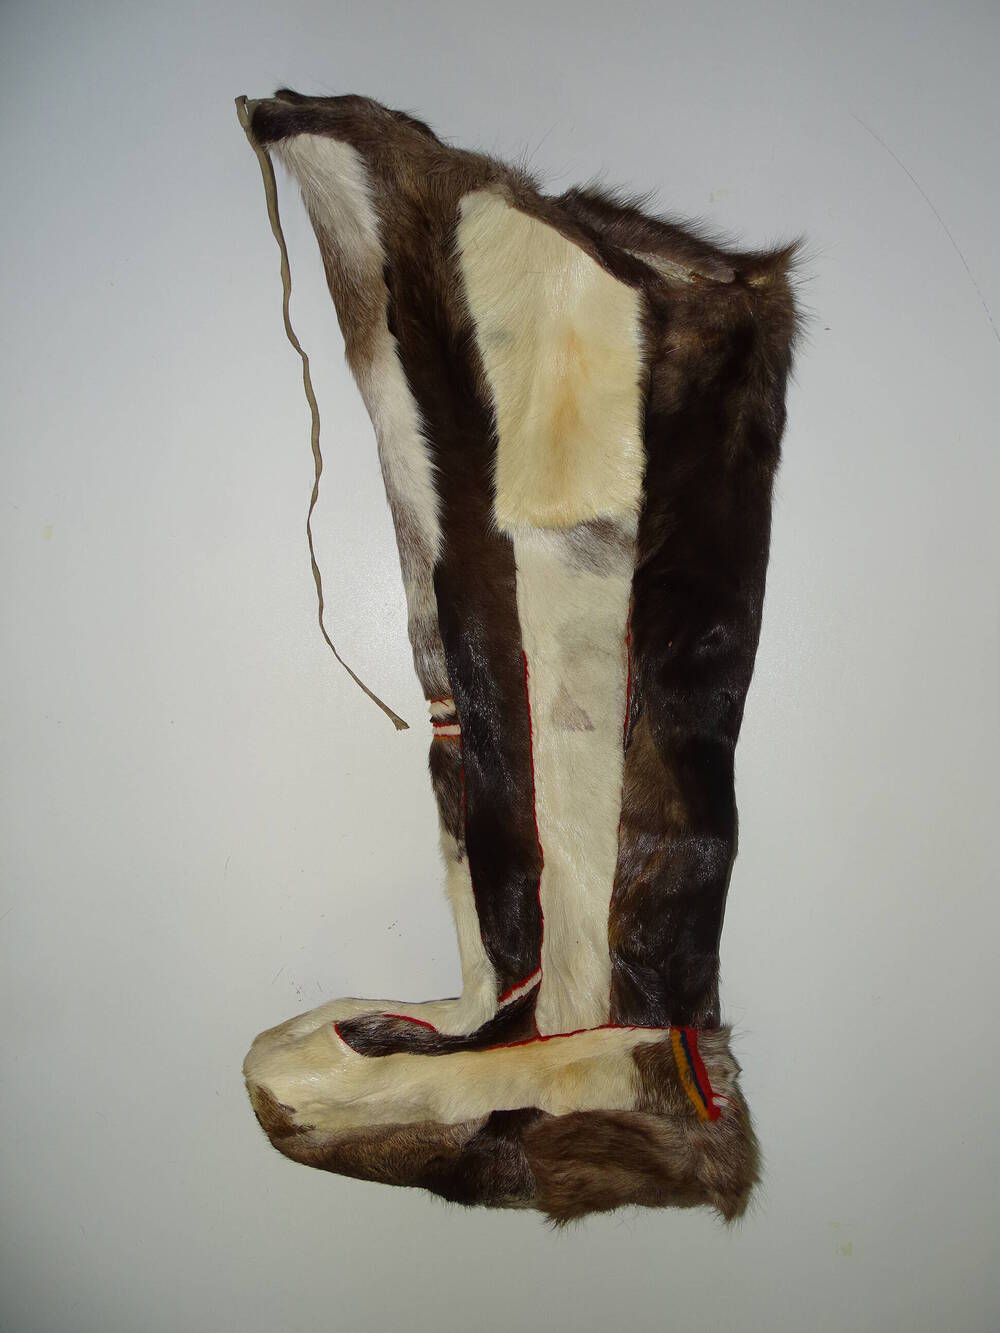 Обувь эвенская мужская зимняя -торбаса